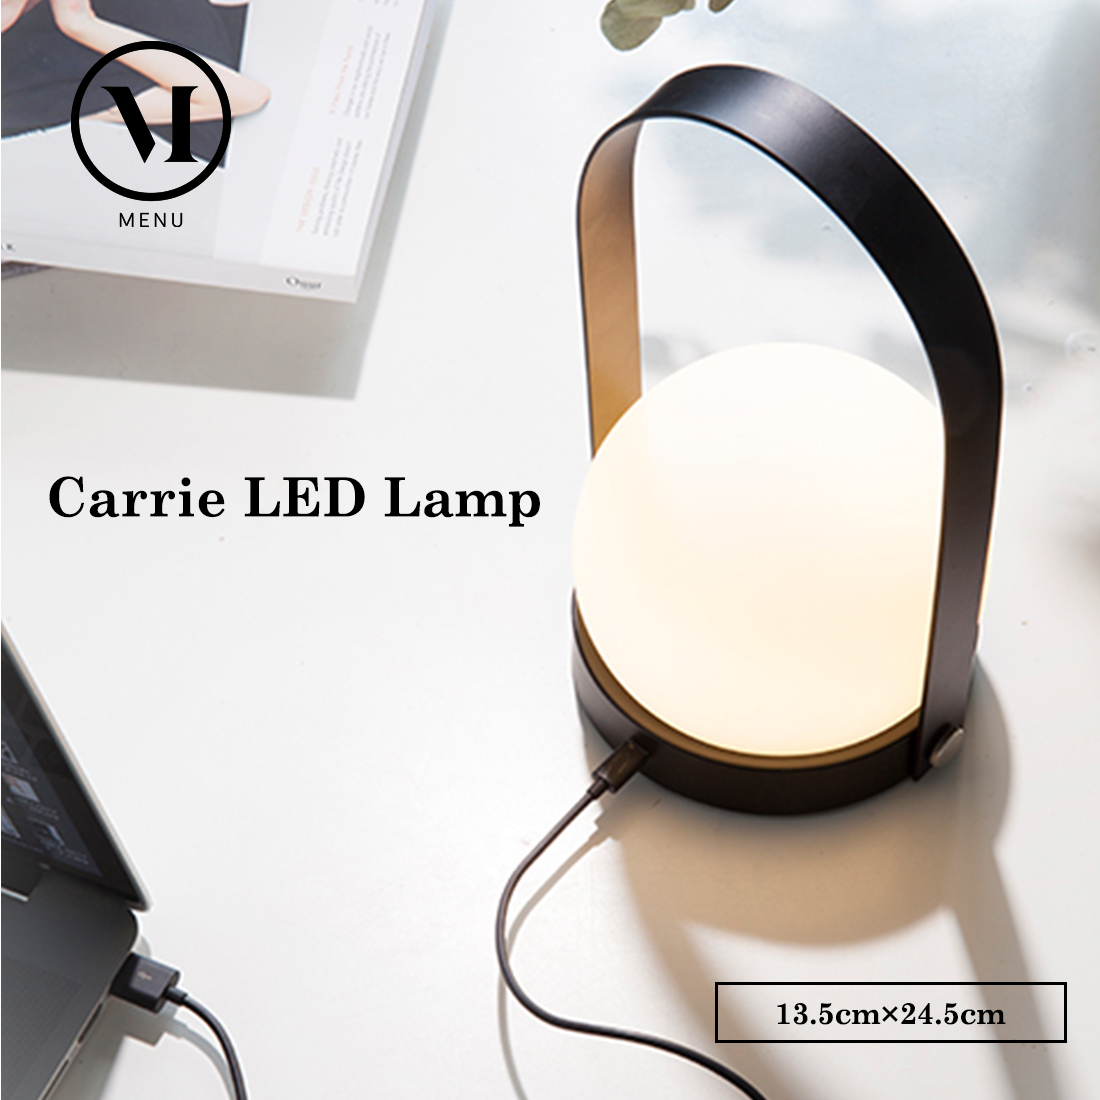 Audo Copenhagen Carrie LED Lamp キャリー LED ランプ 北欧 インテリア ライト ヒュッゲ コードレス USB充電